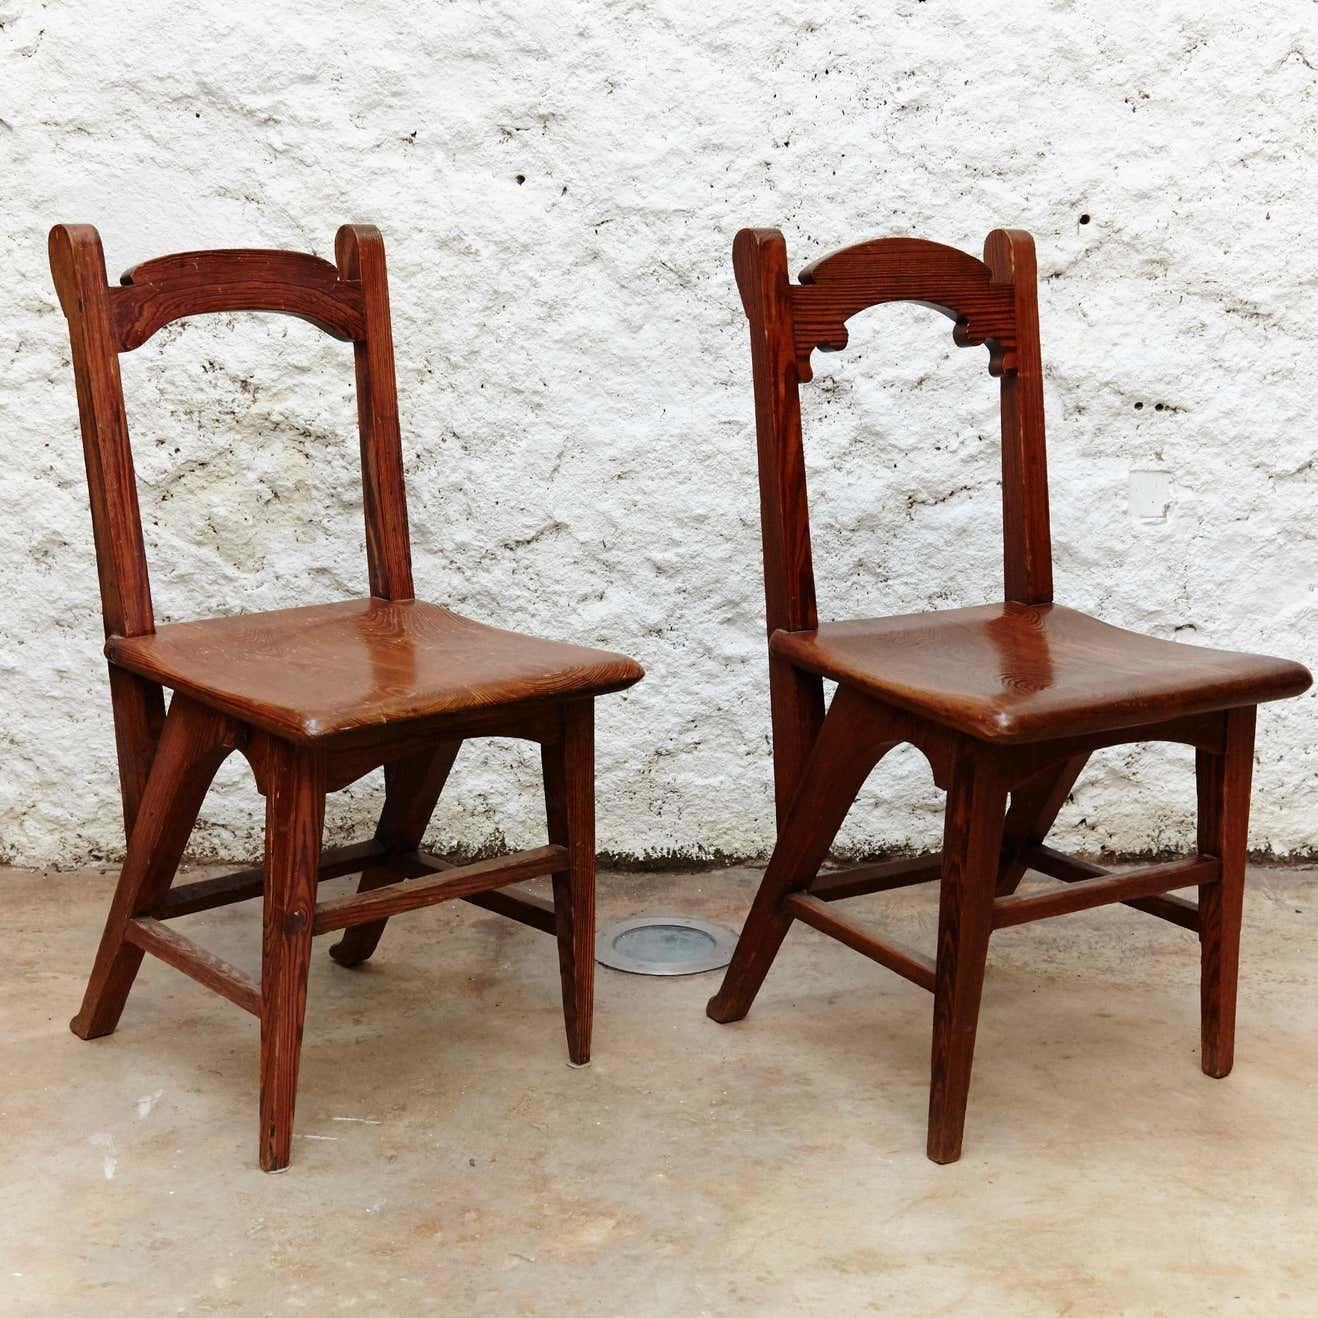 Ein Paar modernistische Holzstühle aus Katalonien,
Entworfen für den Justizpalast in Barcelona.
Hergestellt um 1920 in Barcelona (Spanien).

Im Originalzustand mit geringen Gebrauchsspuren, die dem Alter und dem Gebrauch entsprechen, wobei eine